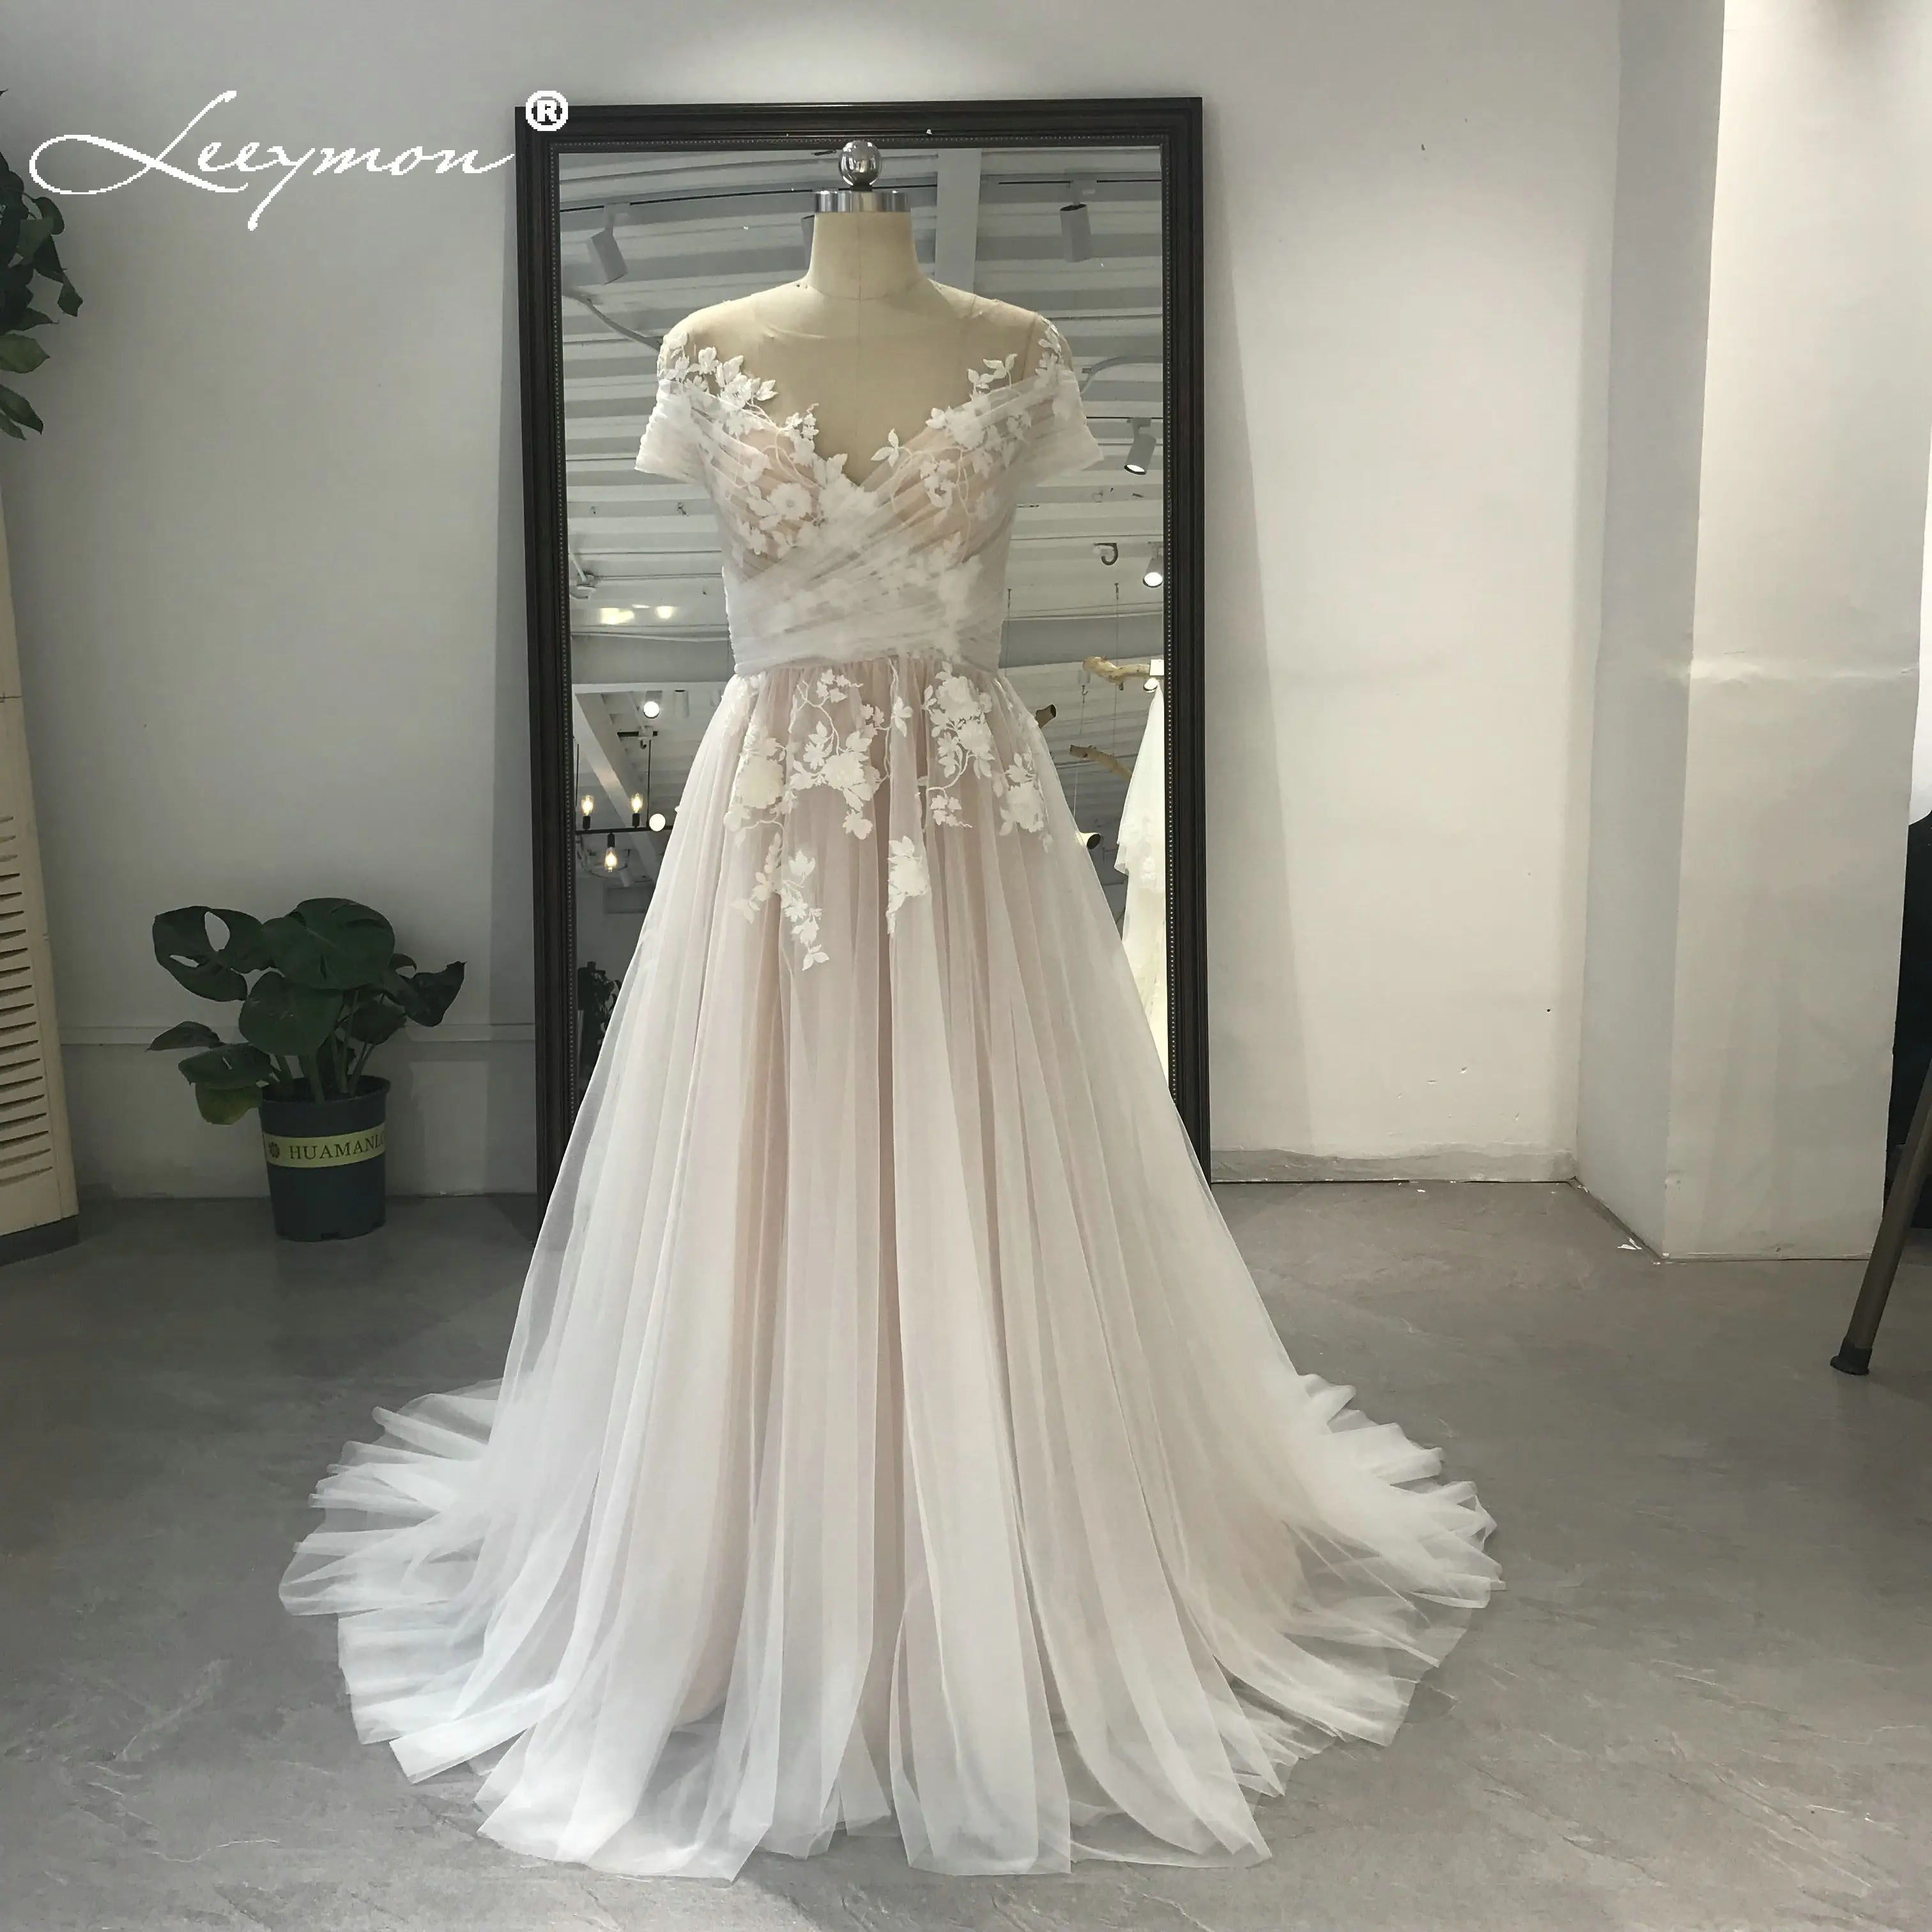 

Leeymon свадебное платье трапециевидной формы, Тюлевое кружевное платье с аппликацией, отделкой бисером, длиной до пола, с вырезом лодочкой